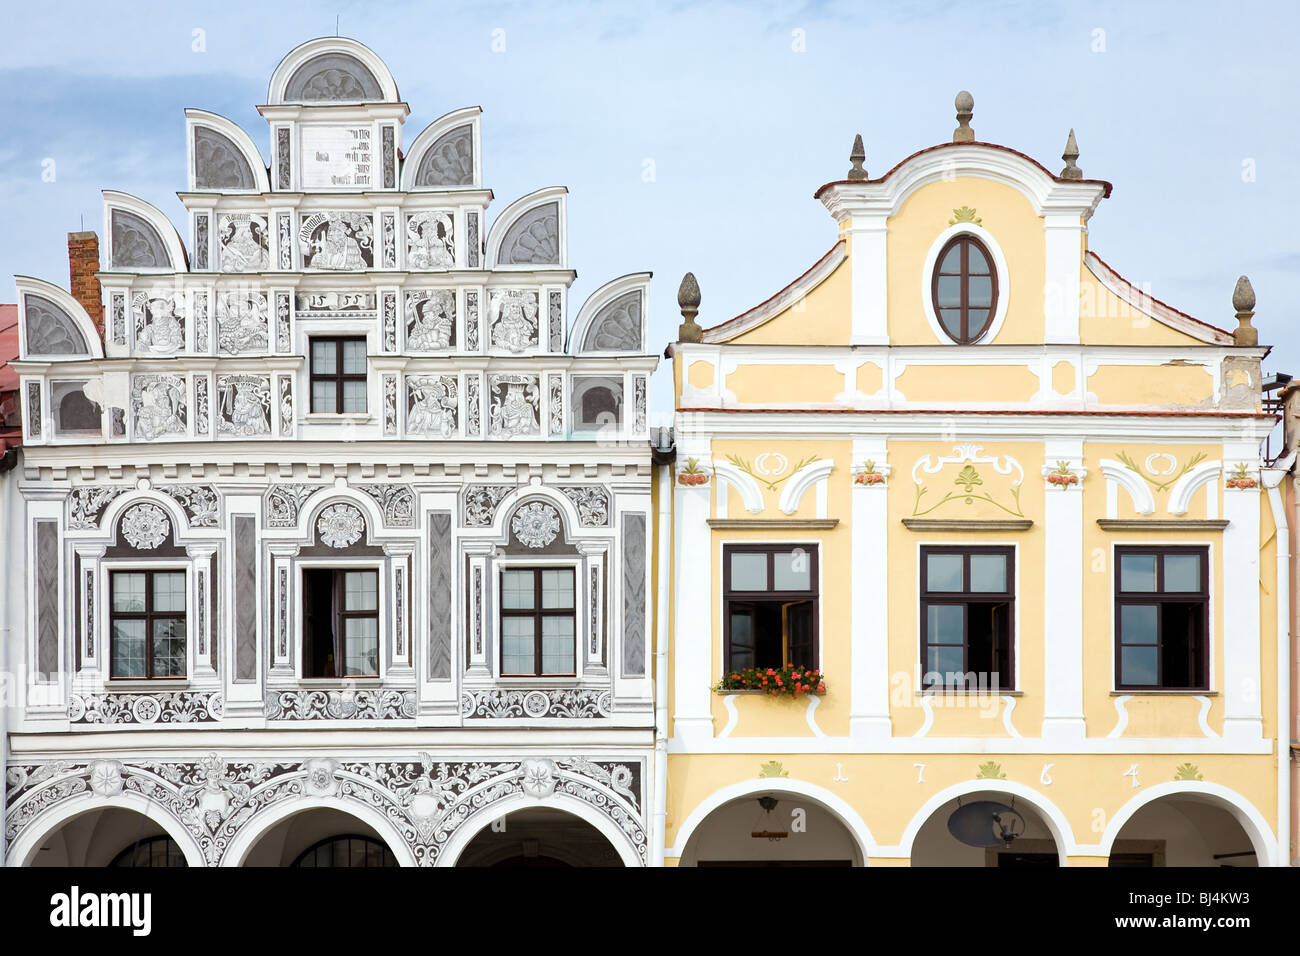 Nahaufnahme der Giebel Fassade der Stadt beherbergt mit Arkaden auf dem Platz in Telc, Böhmen - Tschechien. UNESCO geschützten Kulturerbes. Stockfoto